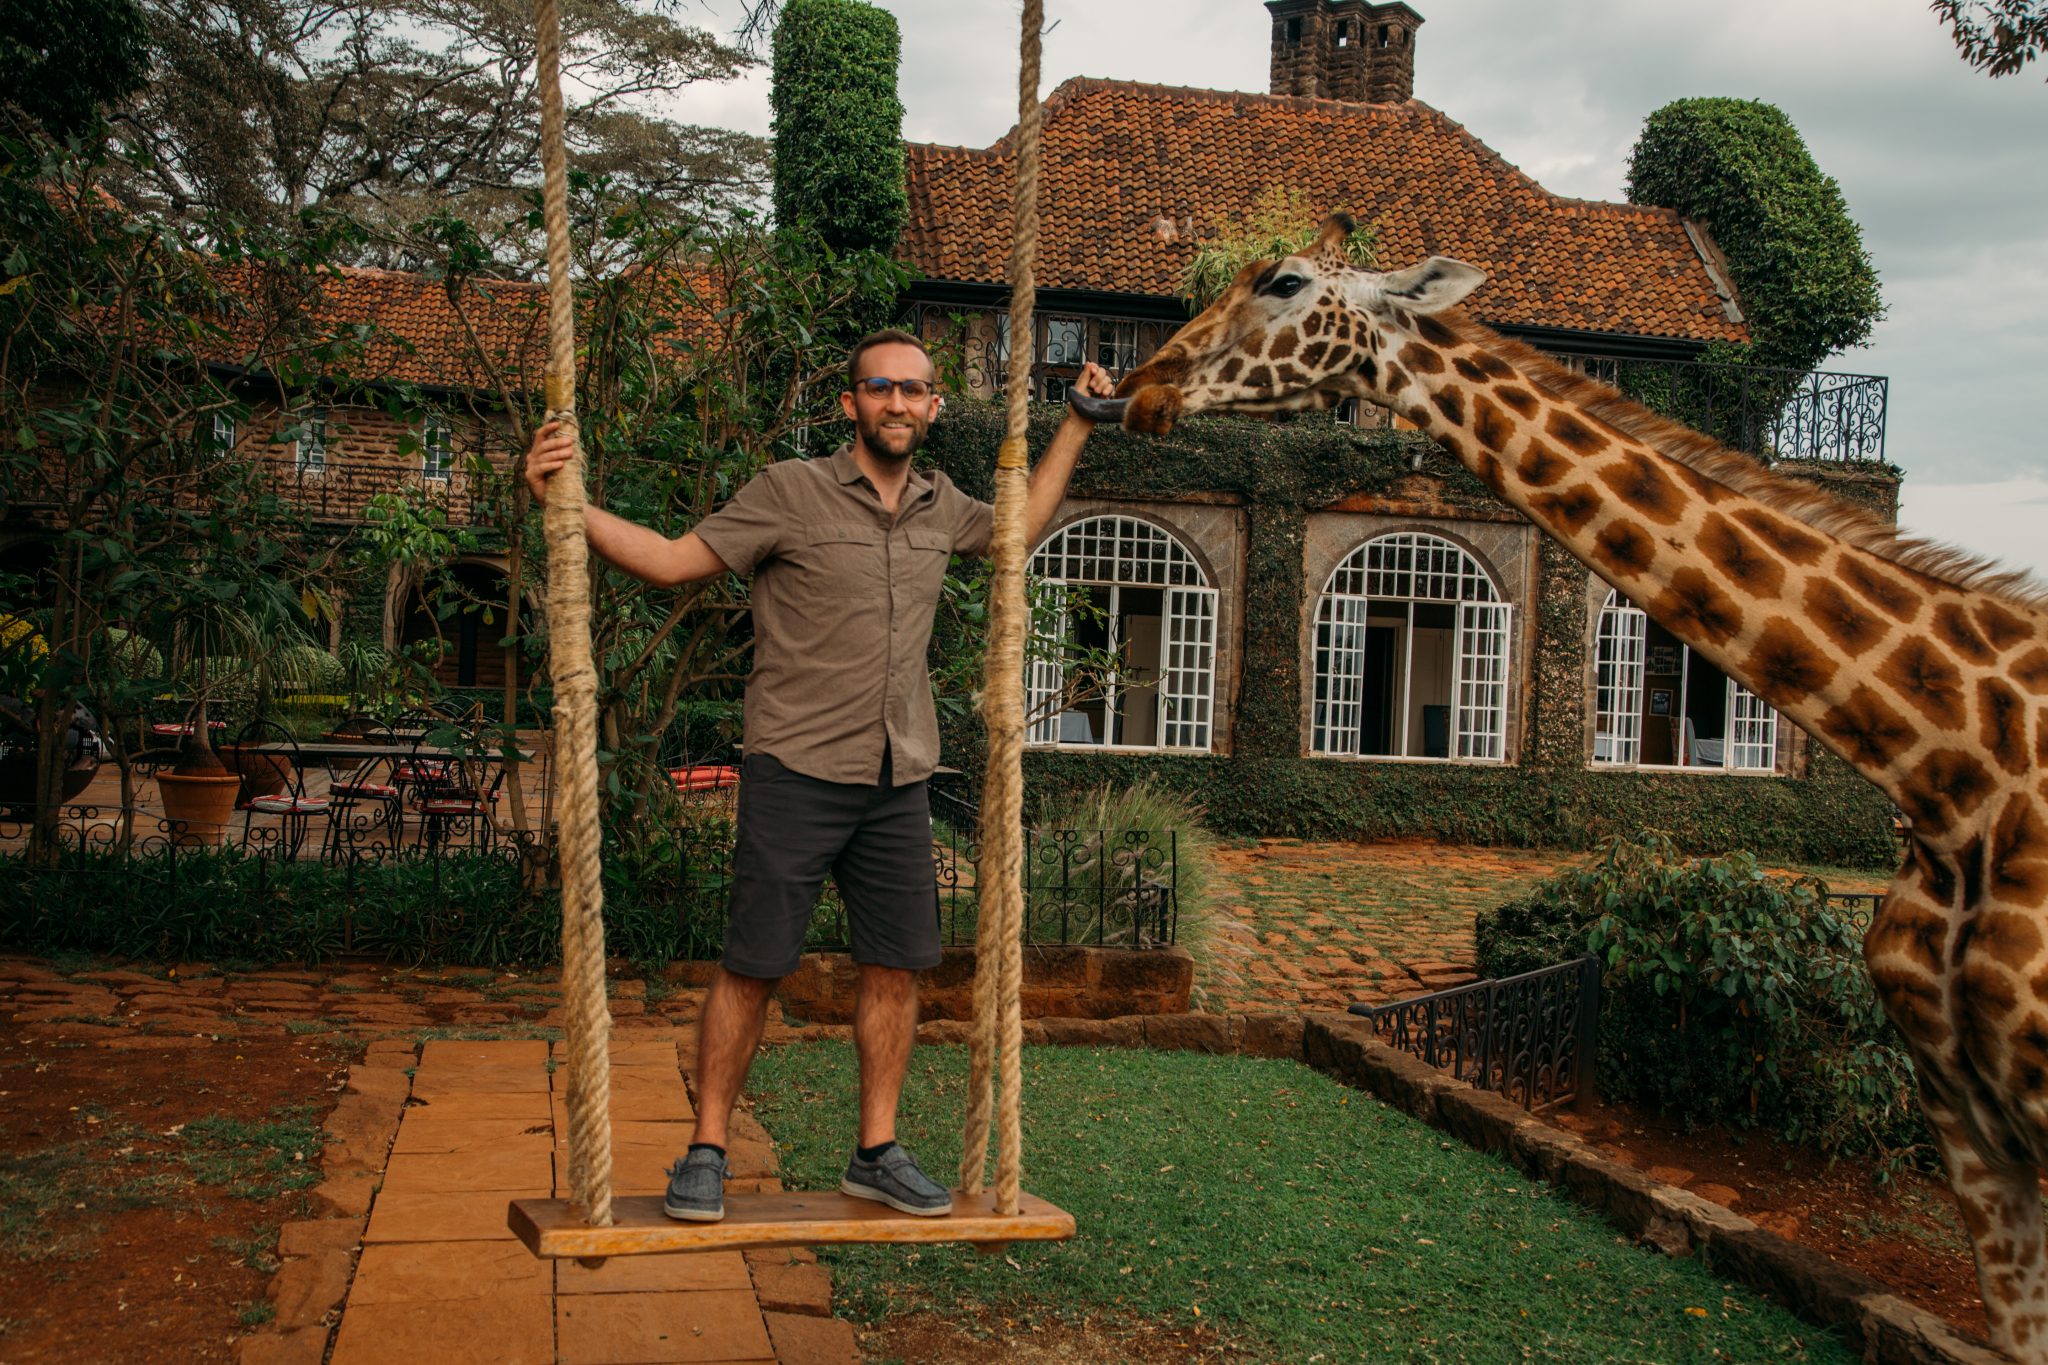 A man standing on a swing next to a giraffe.